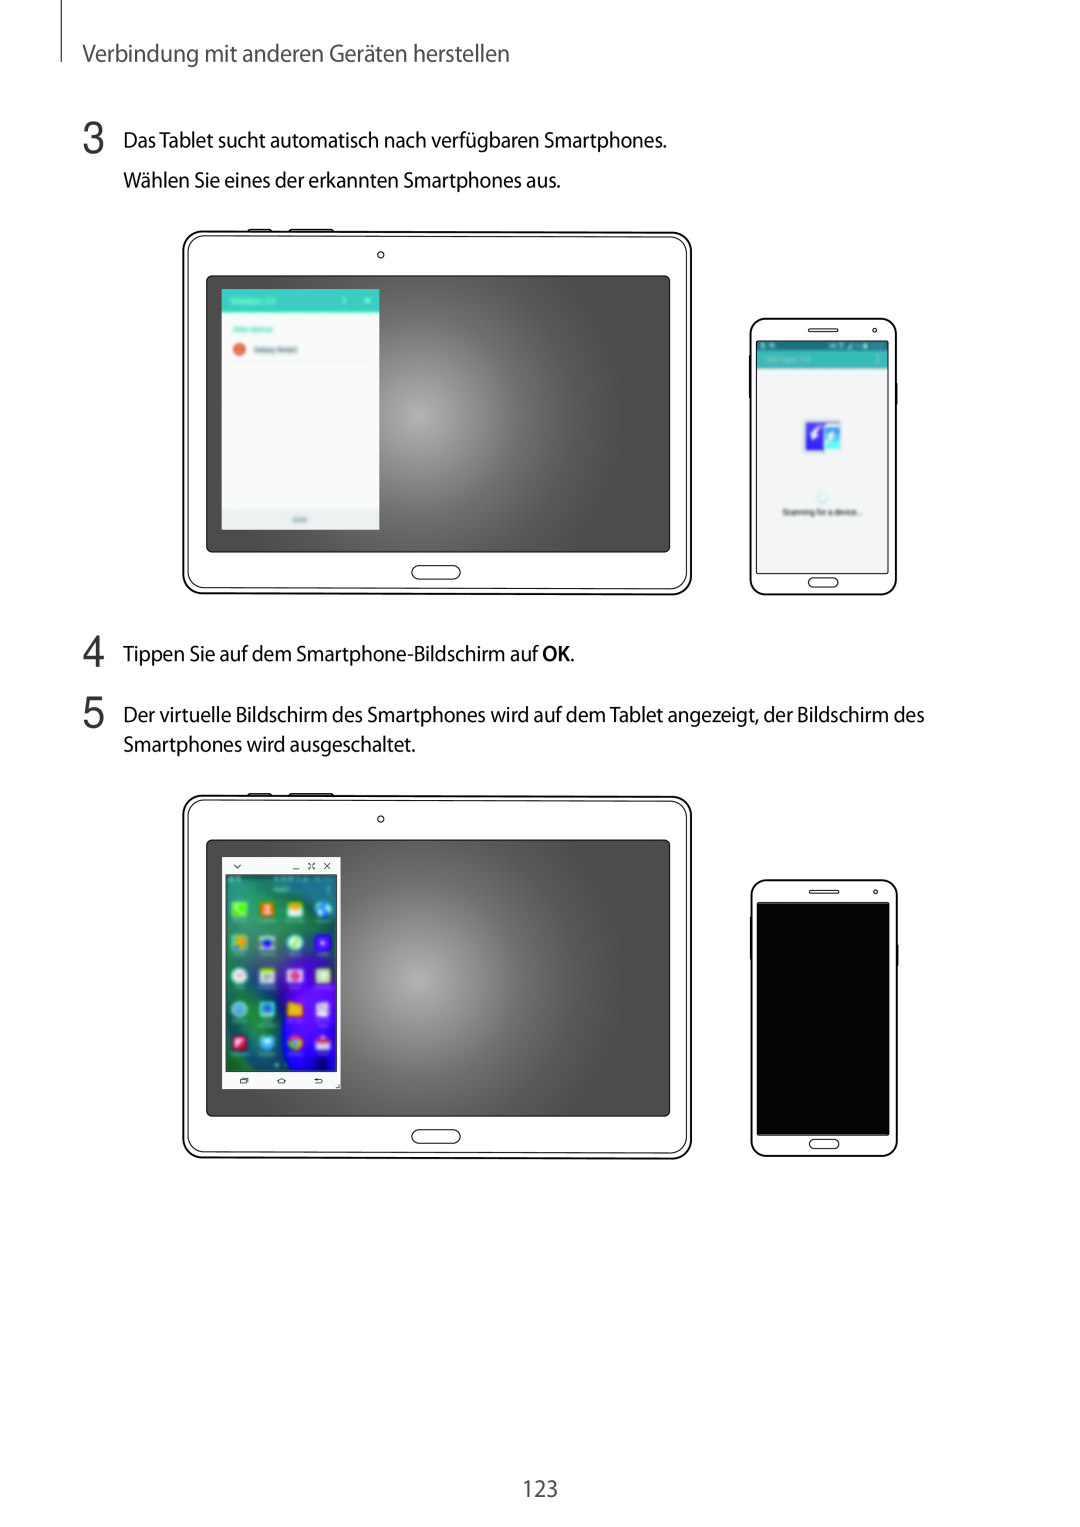 Samsung SM-T800NTSAEUR manual Verbindung mit anderen Geräten herstellen, Tippen Sie auf dem Smartphone-Bildschirm auf OK 